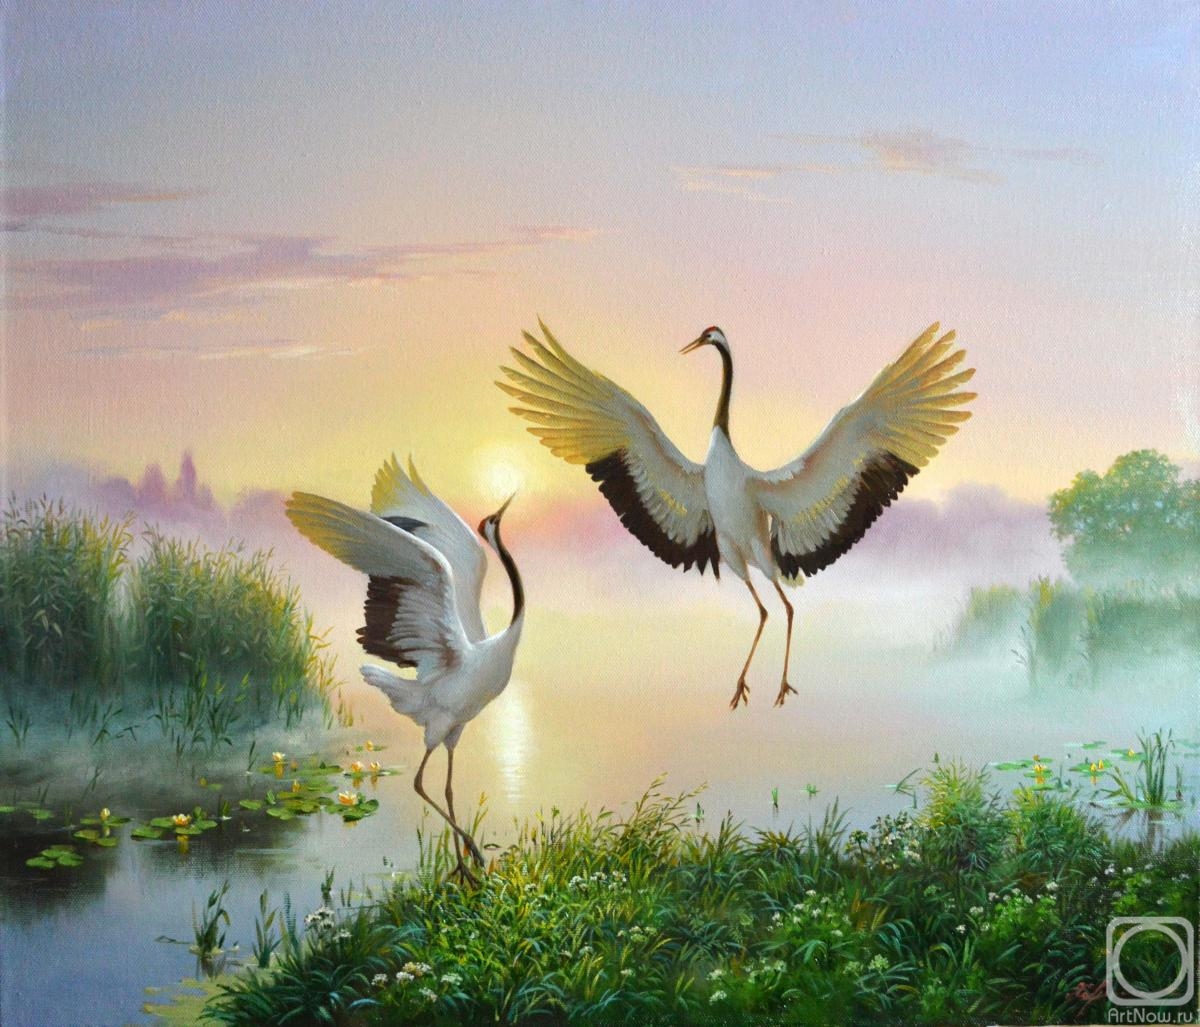 Kharchenko Ivan. Dancing cranes